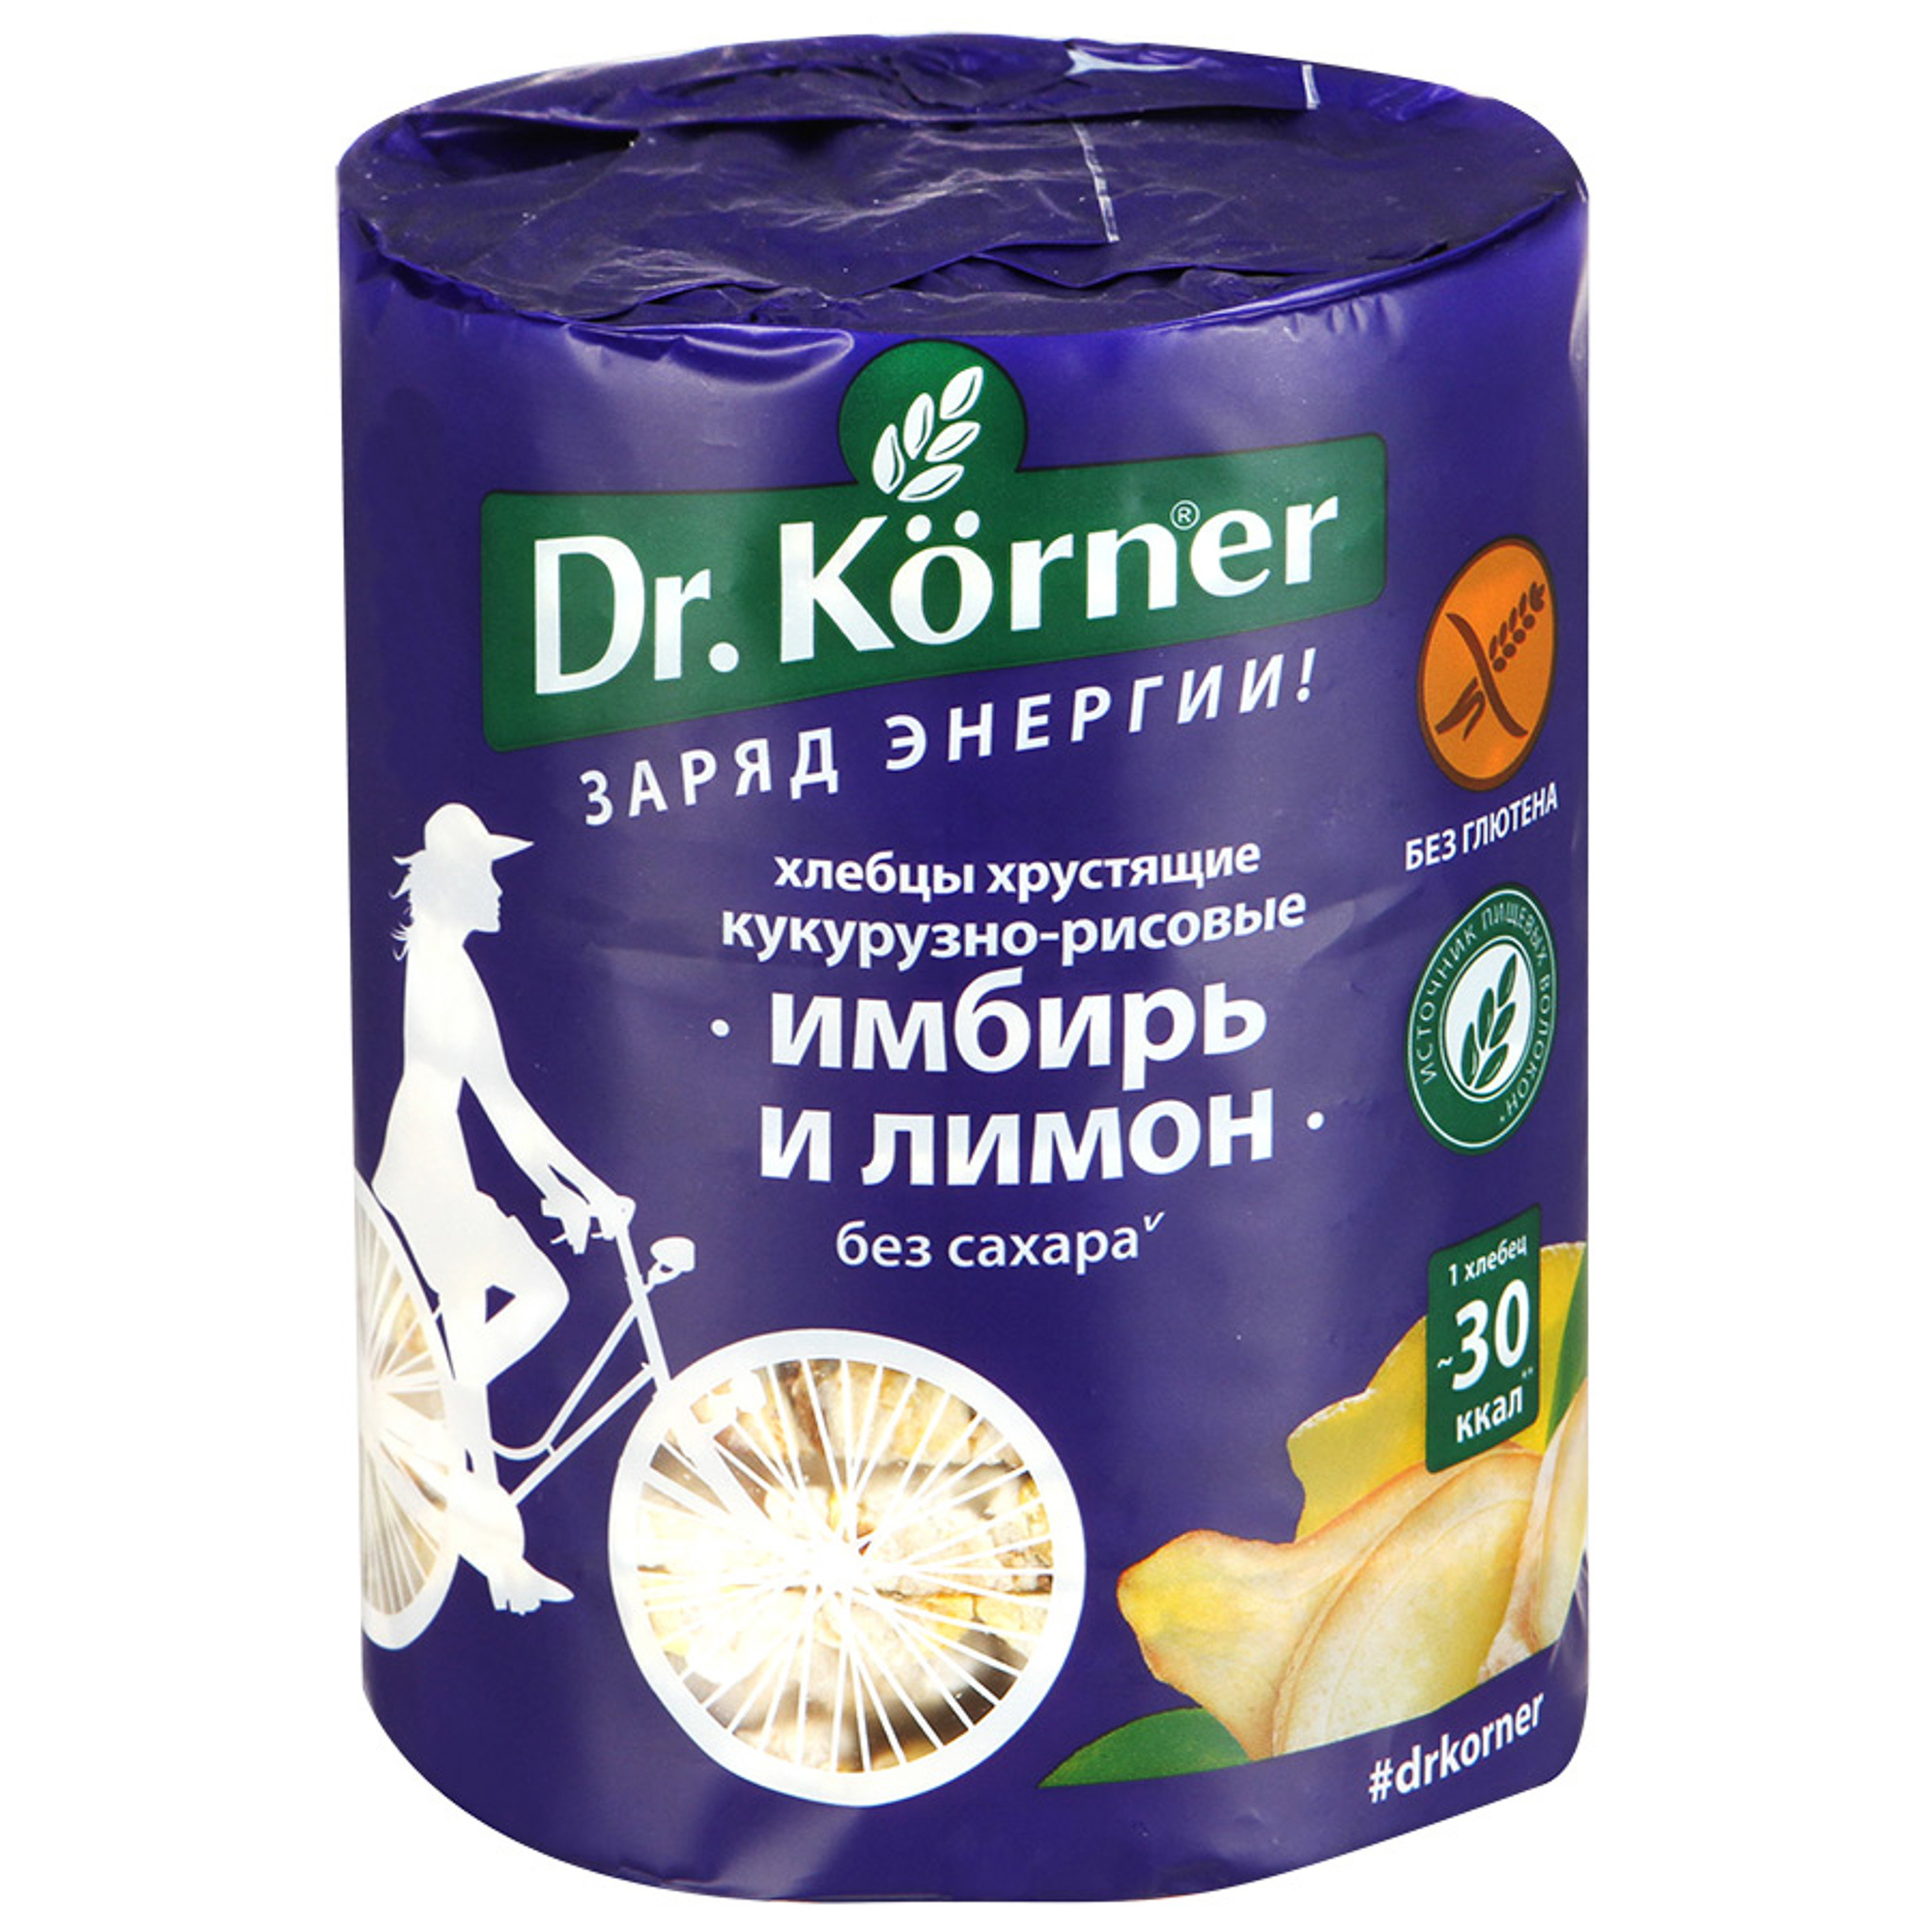 Хлебцы хрустящие Dr. Korner Кукурузно-рисовые с имбирем и лимоном 90 г хлебцы ржаные цельнозерновые wasa 275 гр